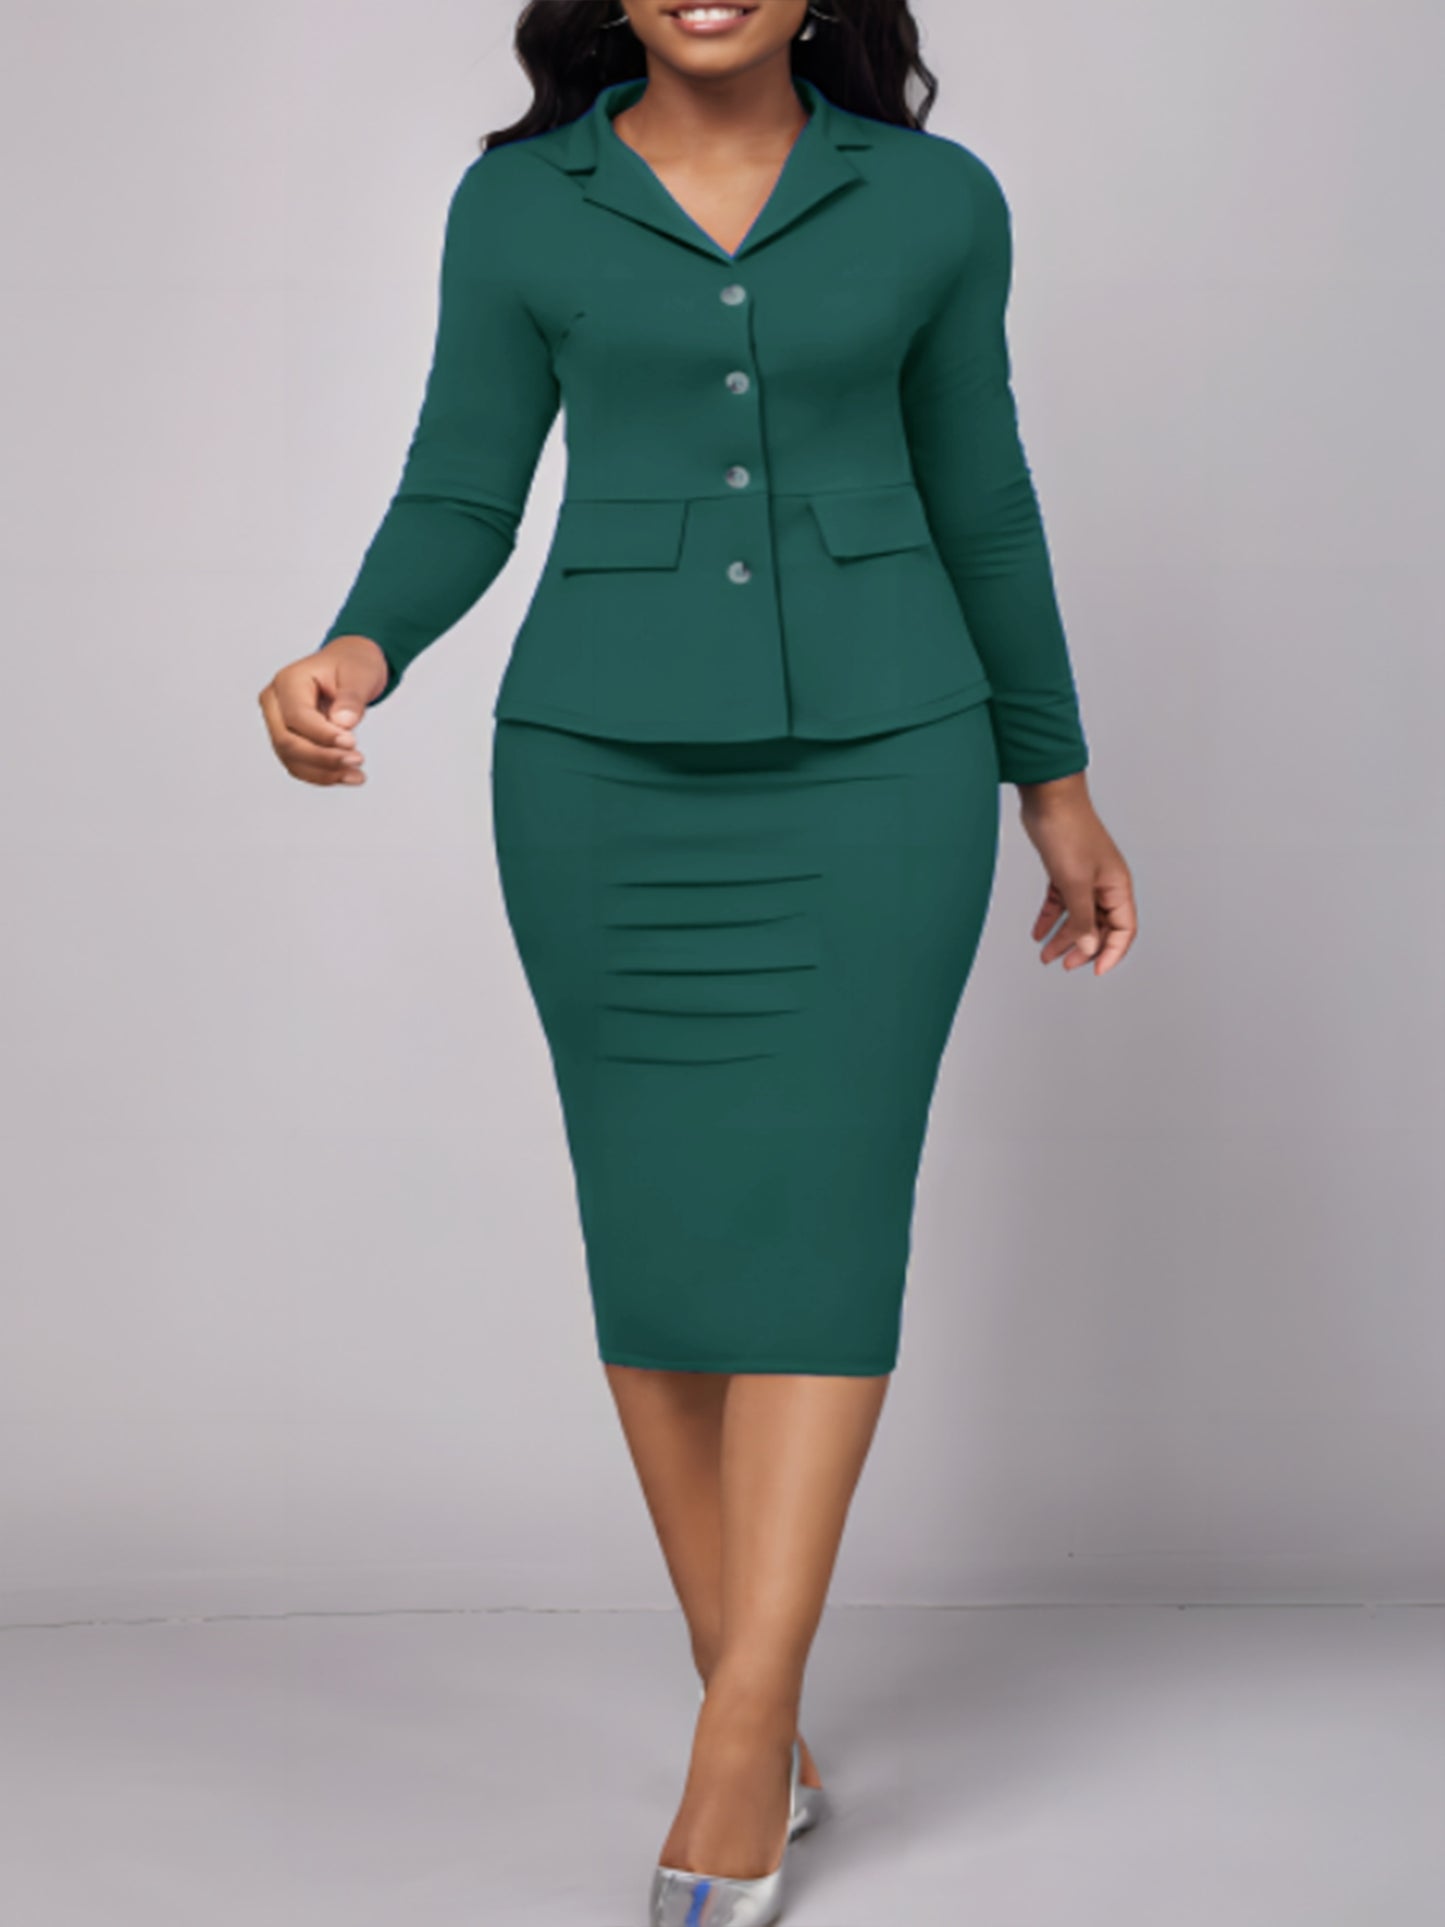 Two-piece Skirt Suit Set, Lapel Blazer & Sheath Midi Skirt 2pcs Business Outfit, Women's Clothing